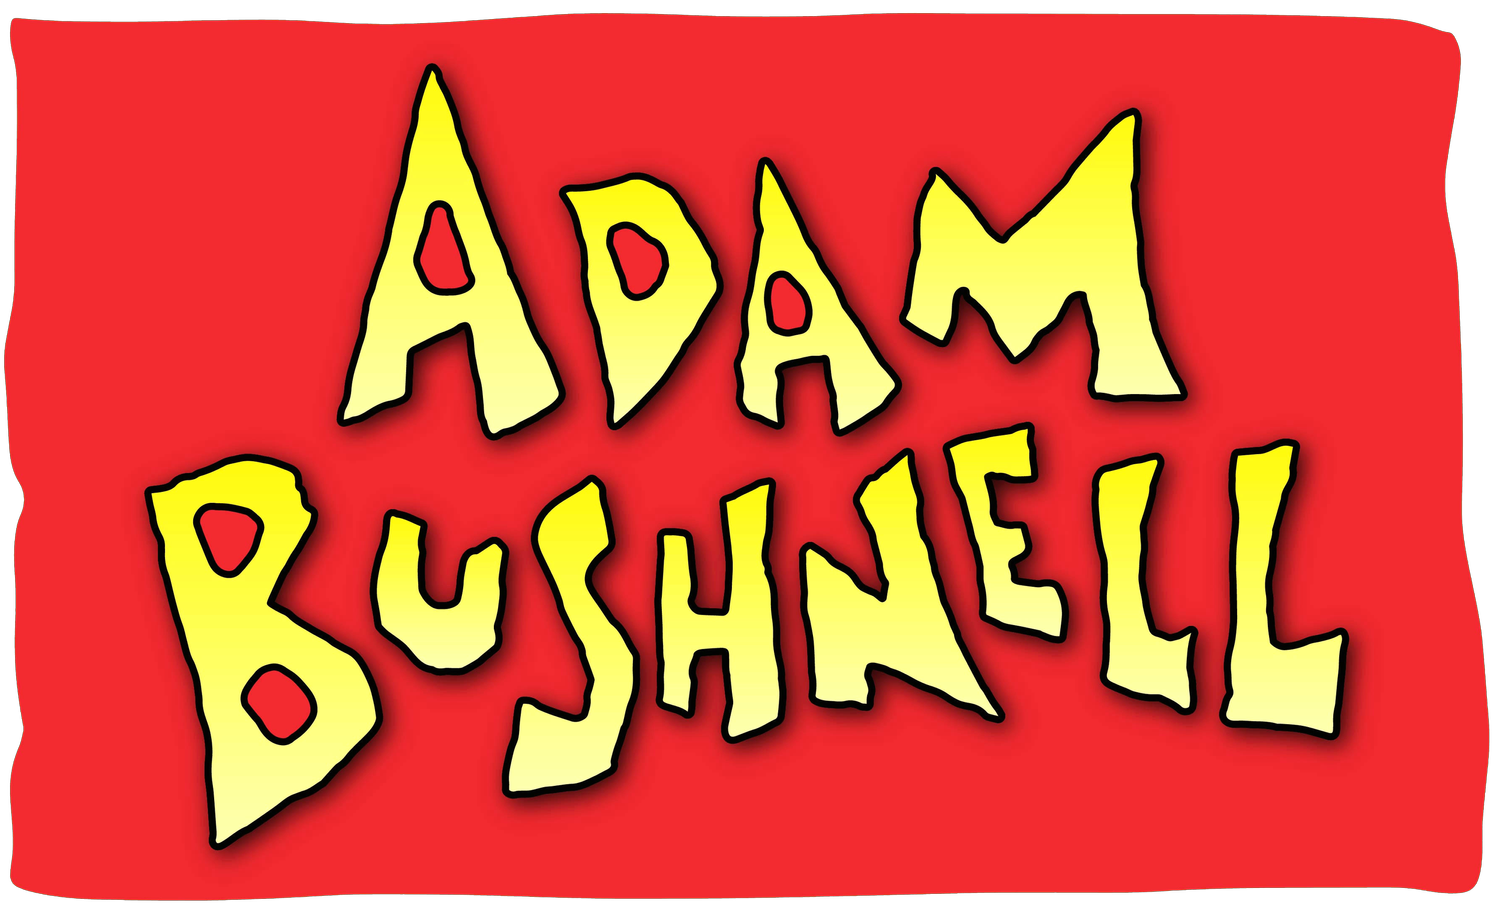 Adam Bushnell